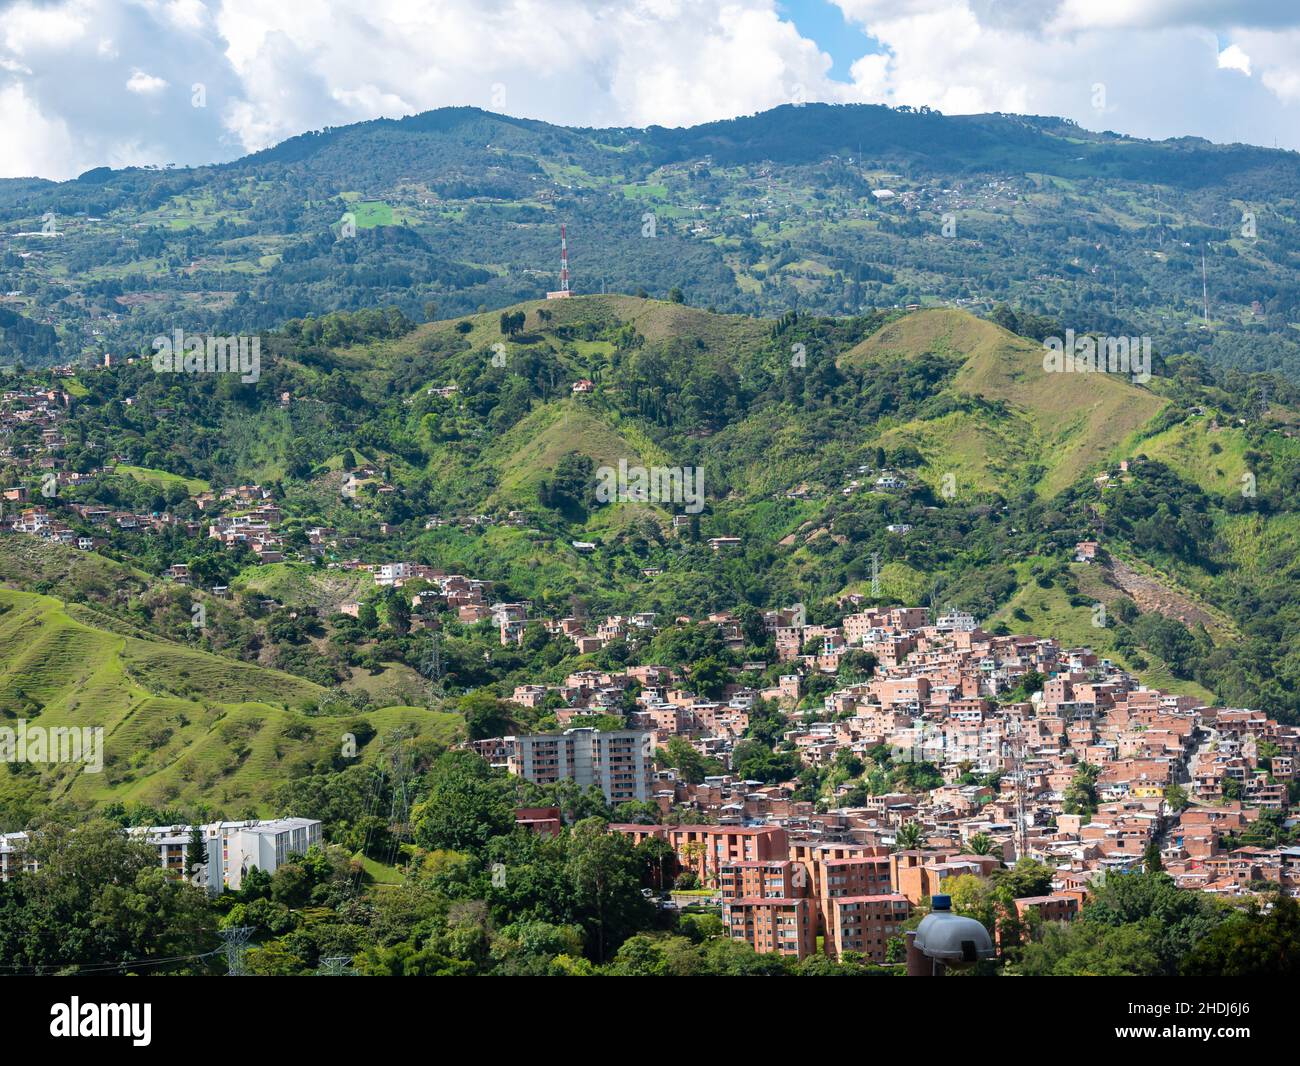 Vista aerea della città di Medellin circondata da montagne, molti edifici, case, alberi in un bellissimo paesaggio Foto Stock